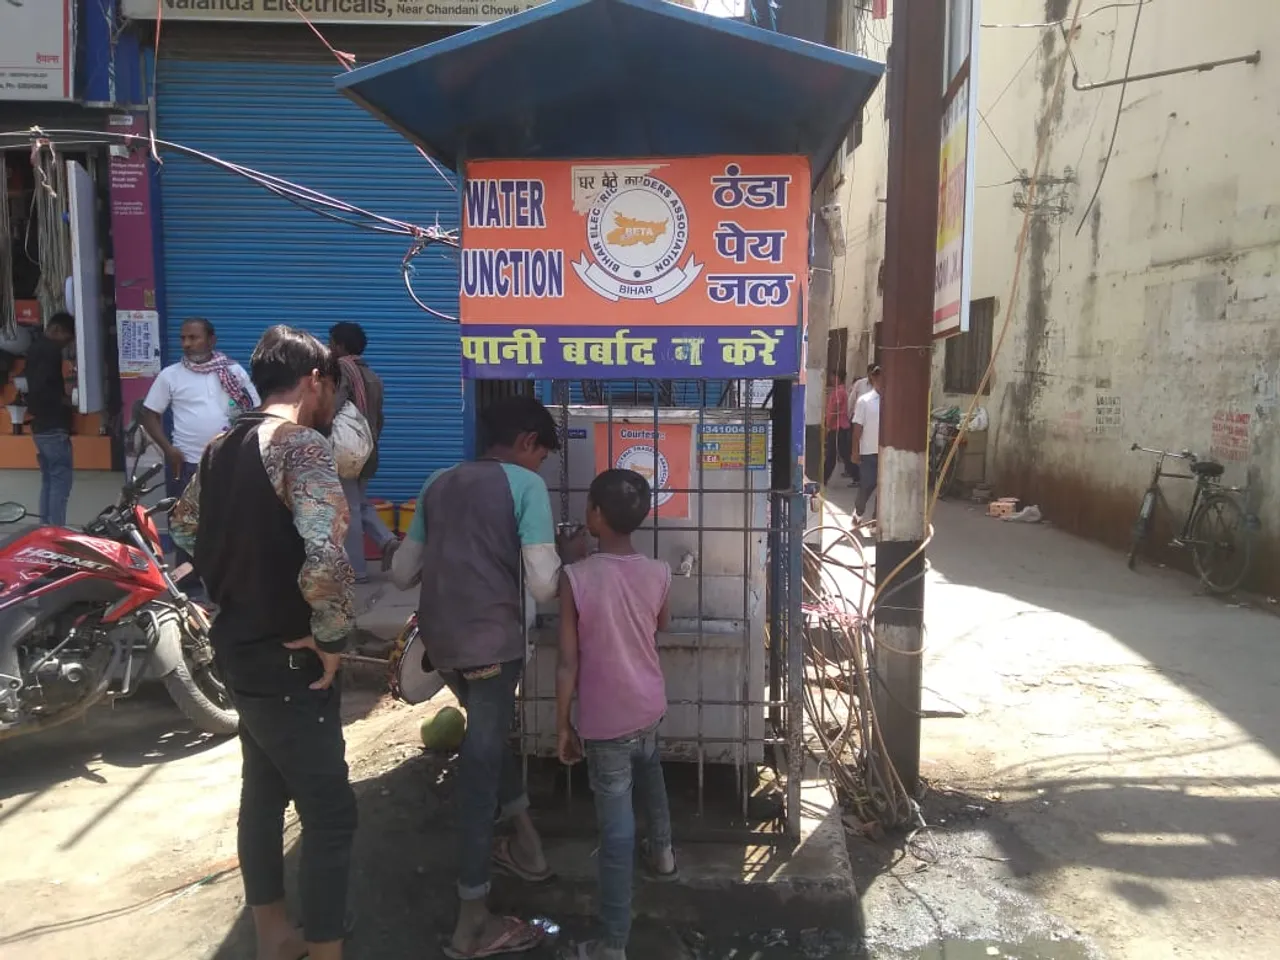 पटना: शहर में मौजूद नहीं प्याऊ, शौचालय का पानी पीते हैं रिक्शाचालक